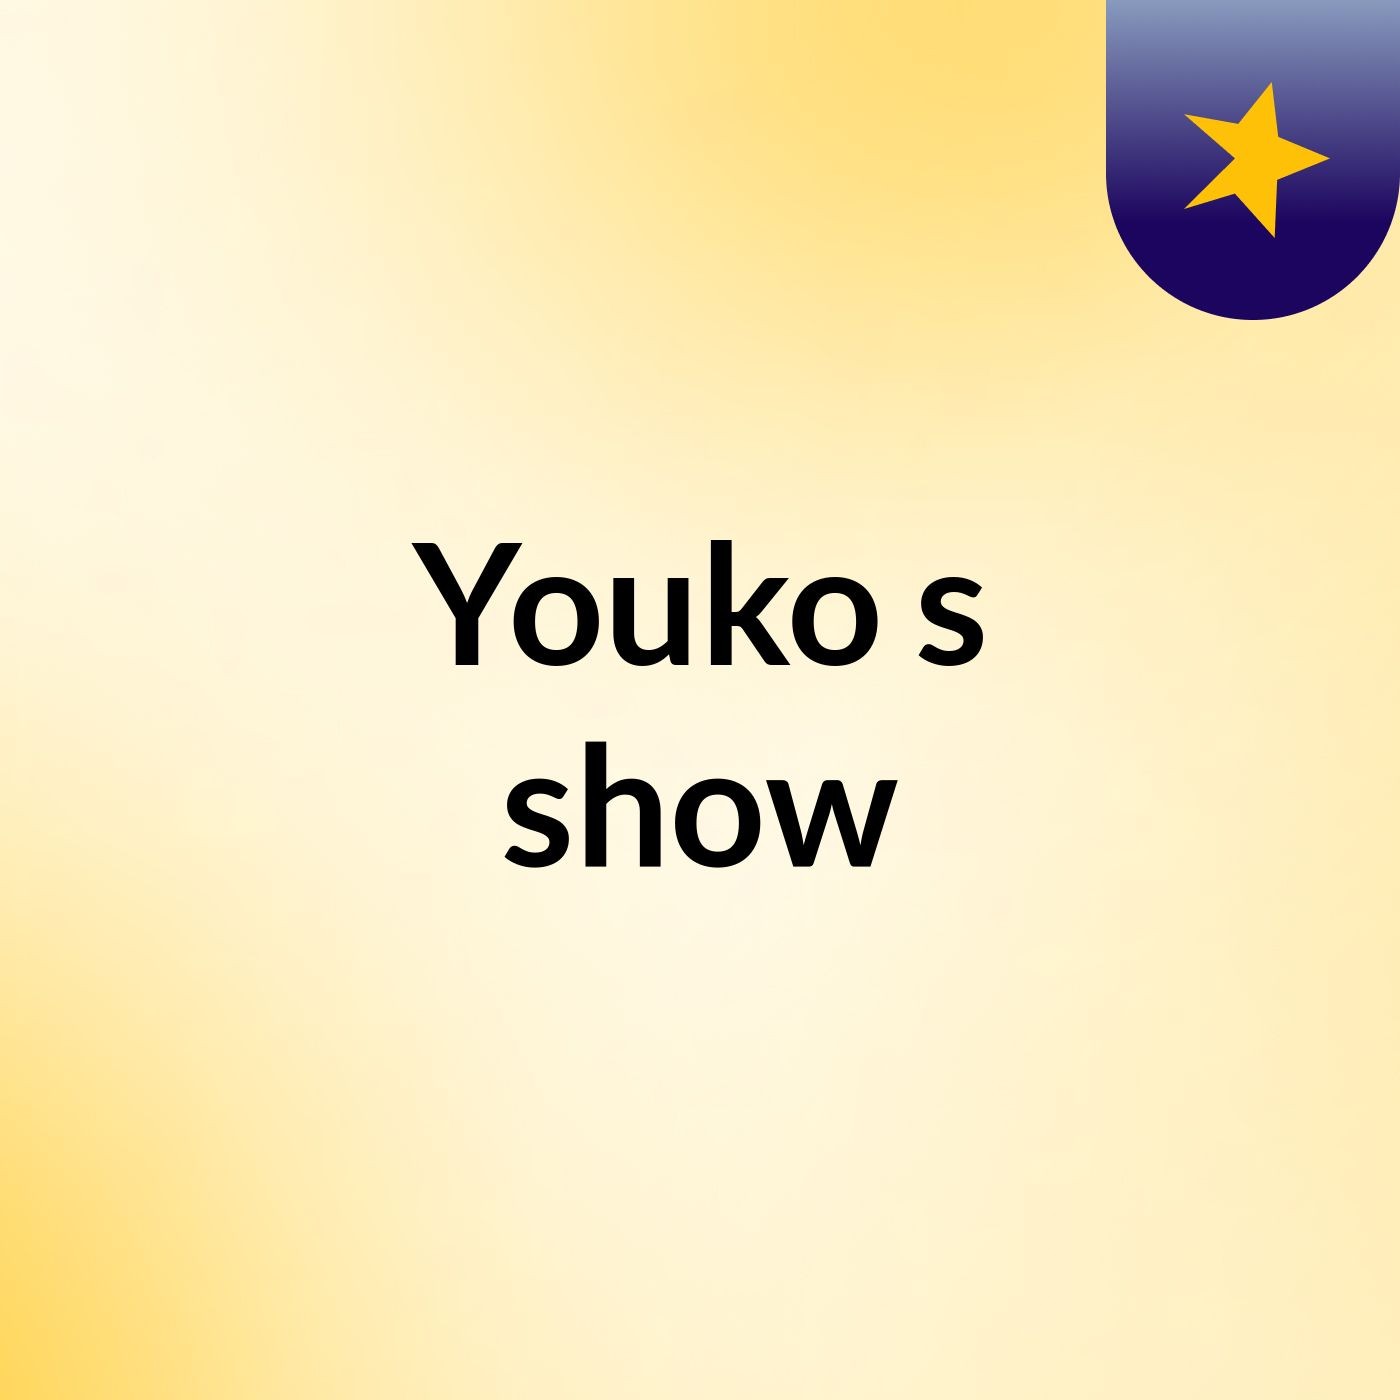 Youko's show